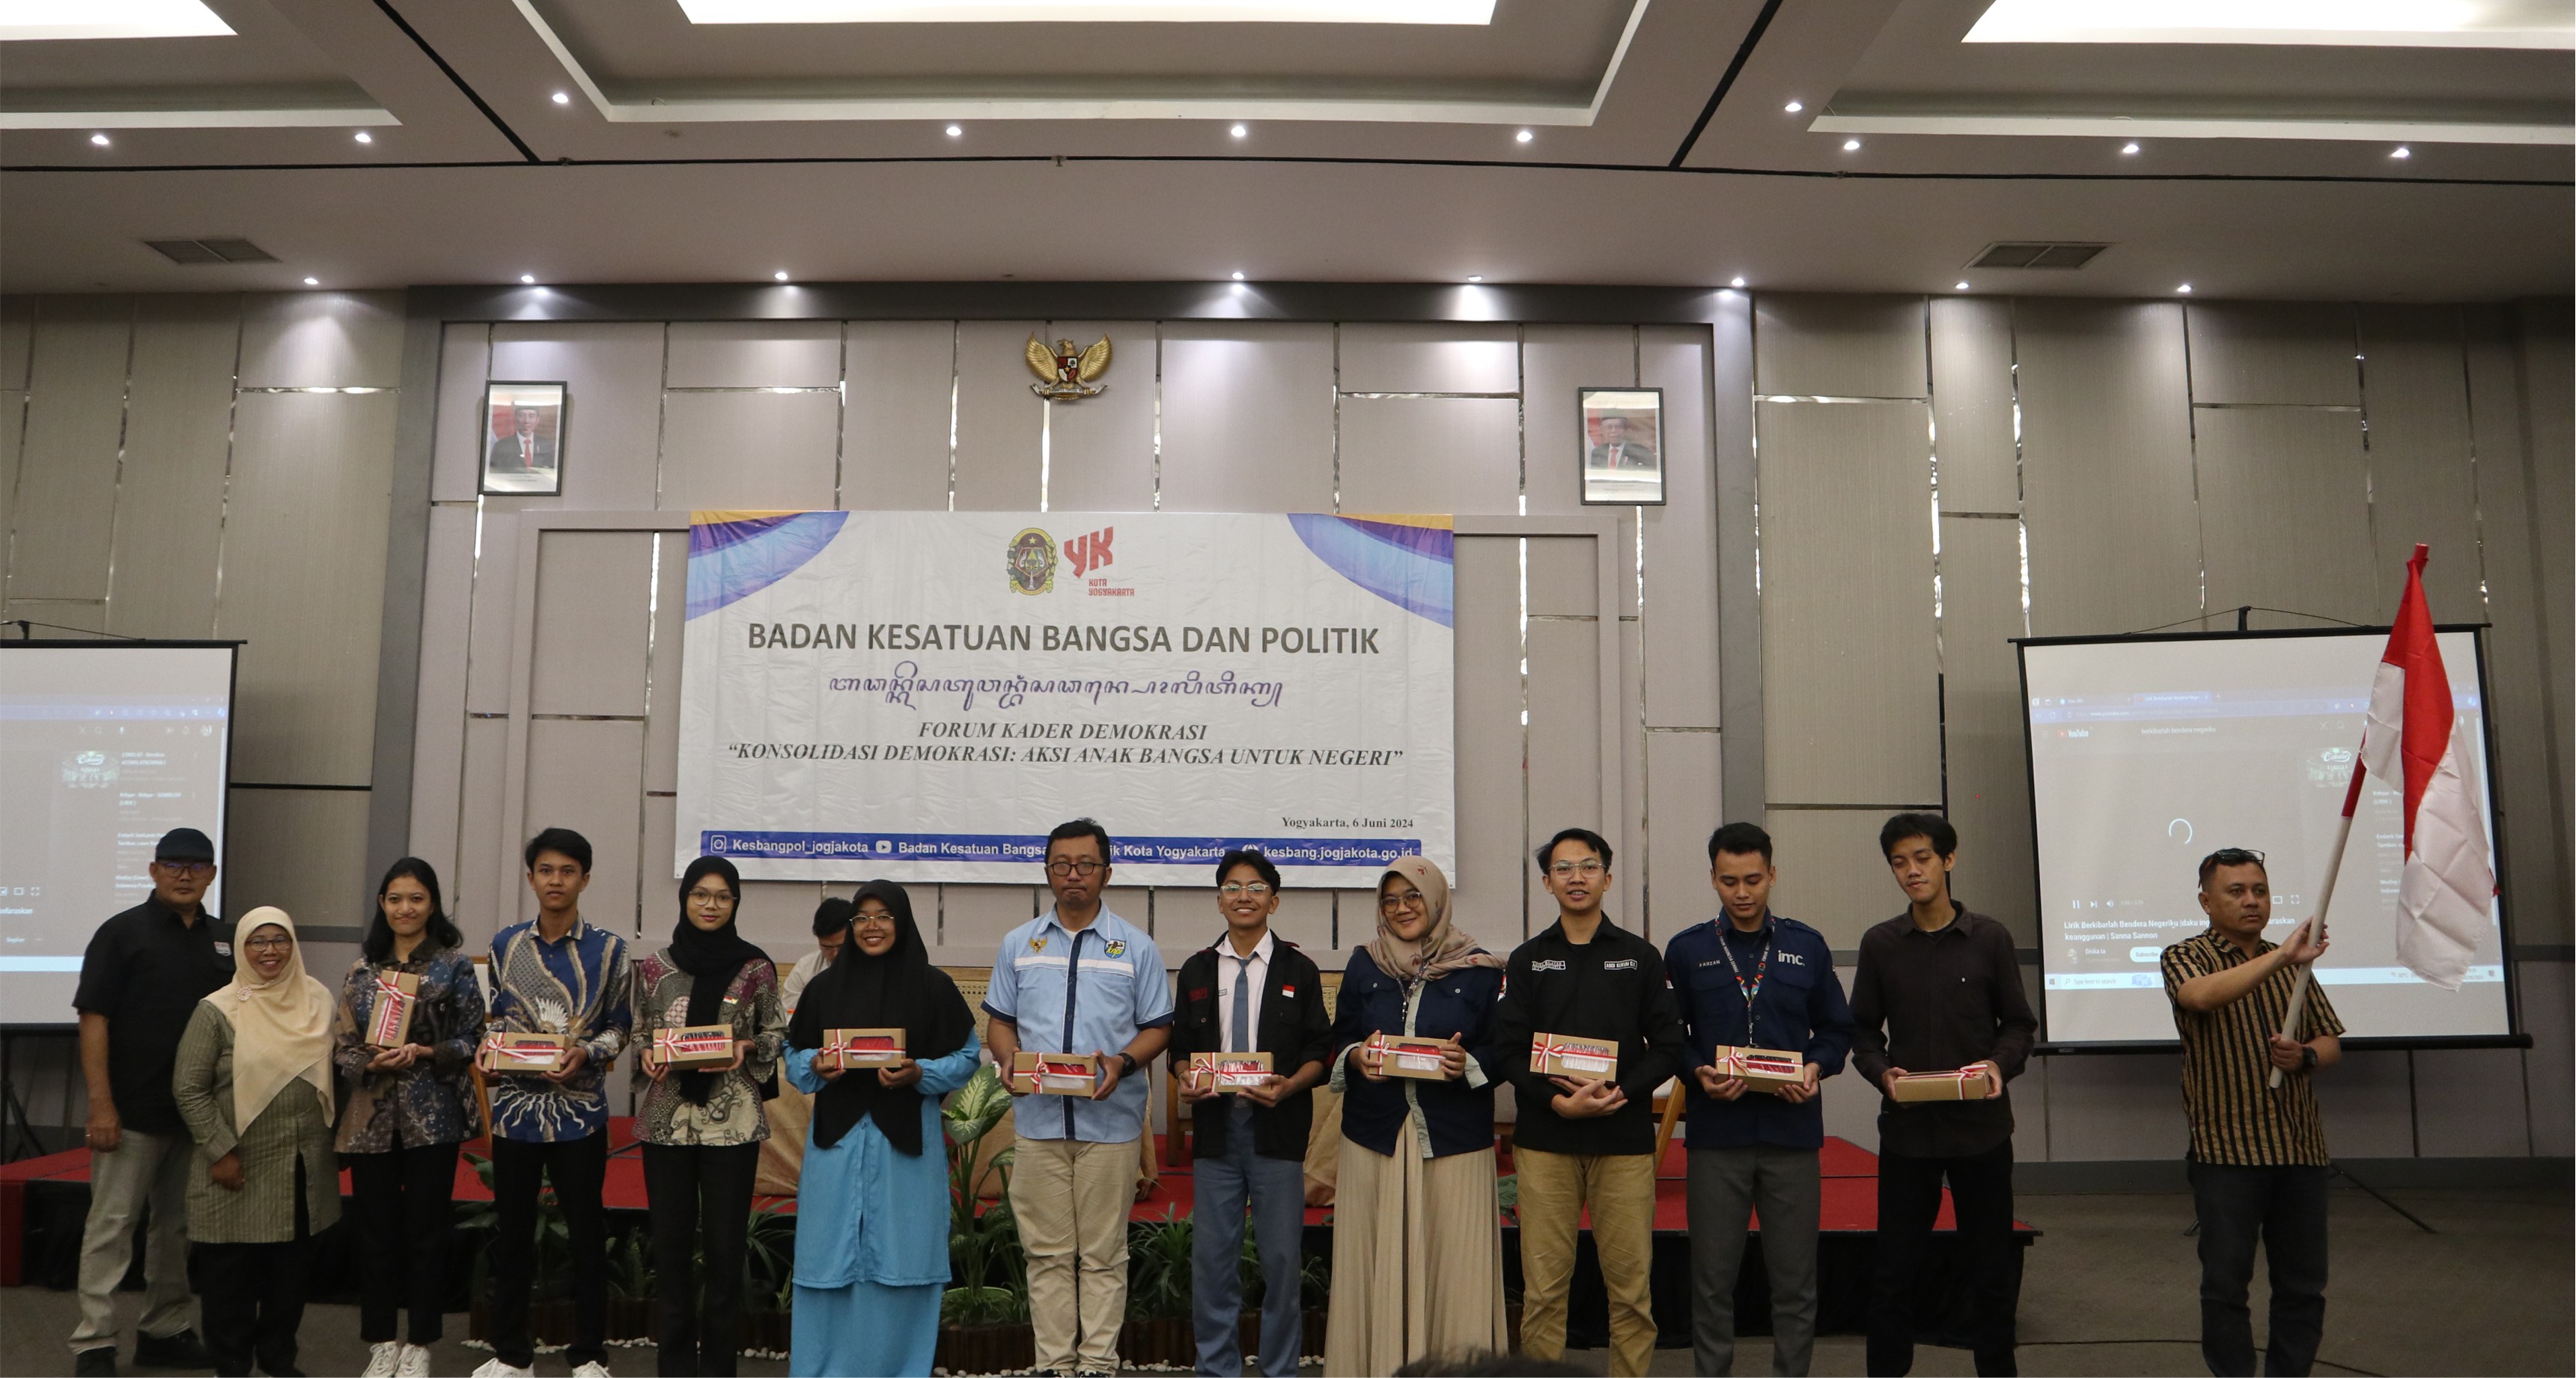 Melalui Forum Kader Demokrasi Bakesbangpol Kota Yogyakarta bersama anak muda Kota Yogyakarta Wujudkan Demokrasi yang Baik dan Berkualitas